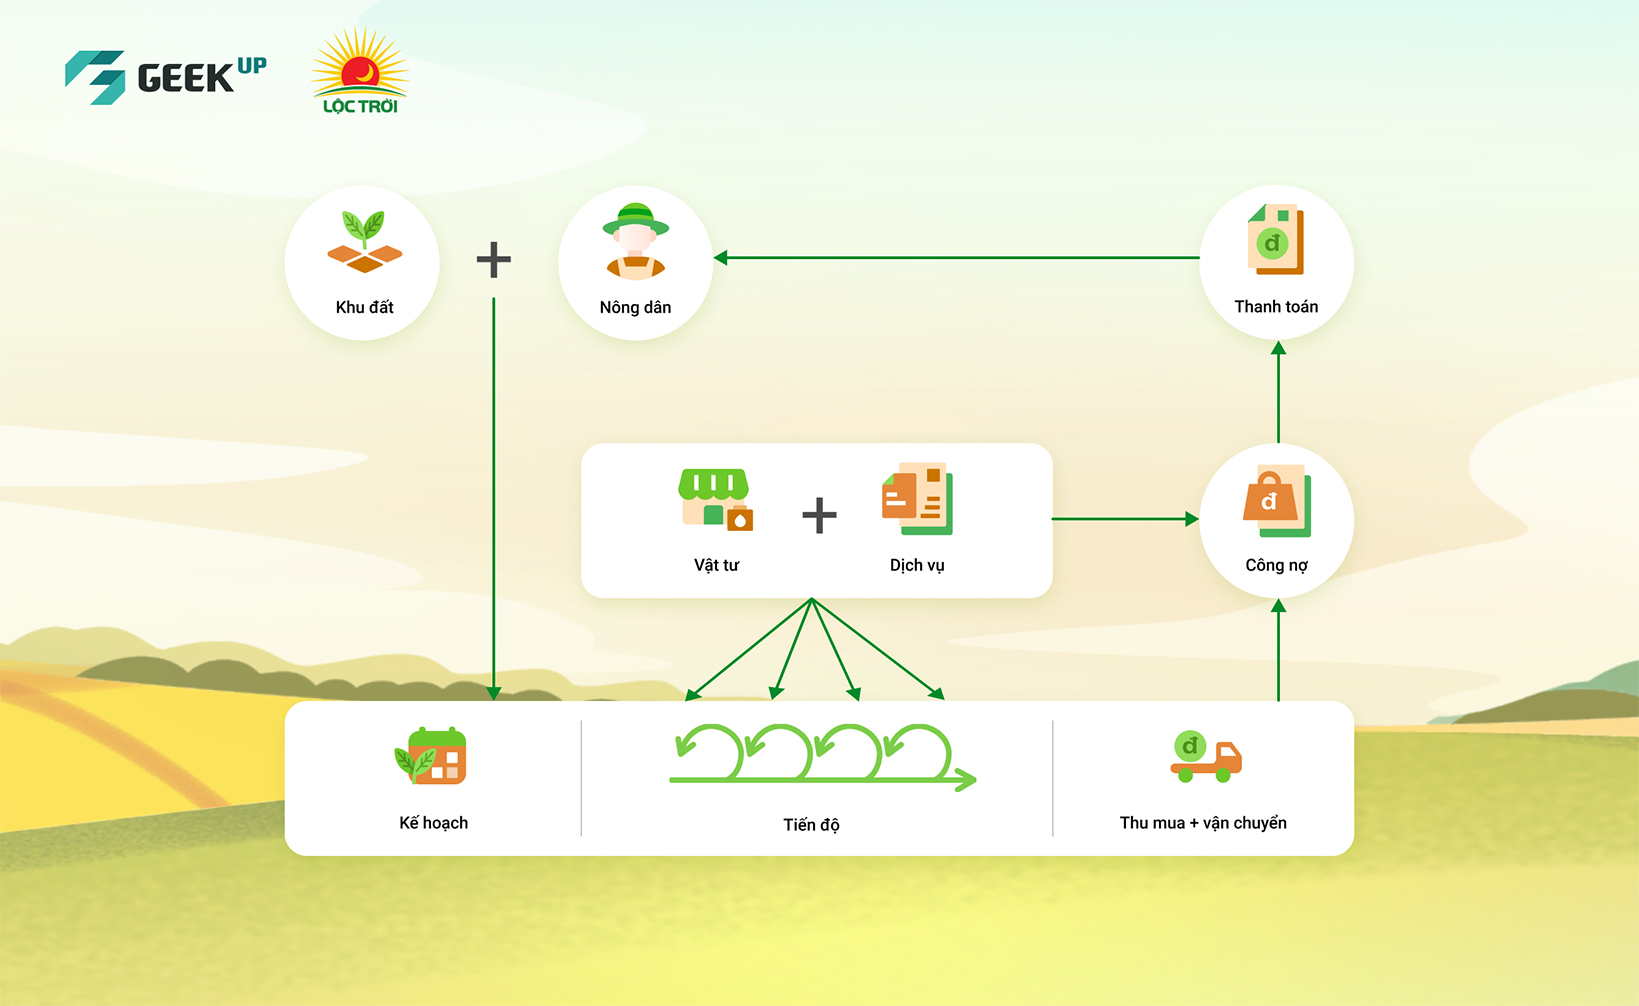 Tiên phong quản lý liên kết sản xuất nông nghiệp trên nền tảng mobile tại Việt Nam